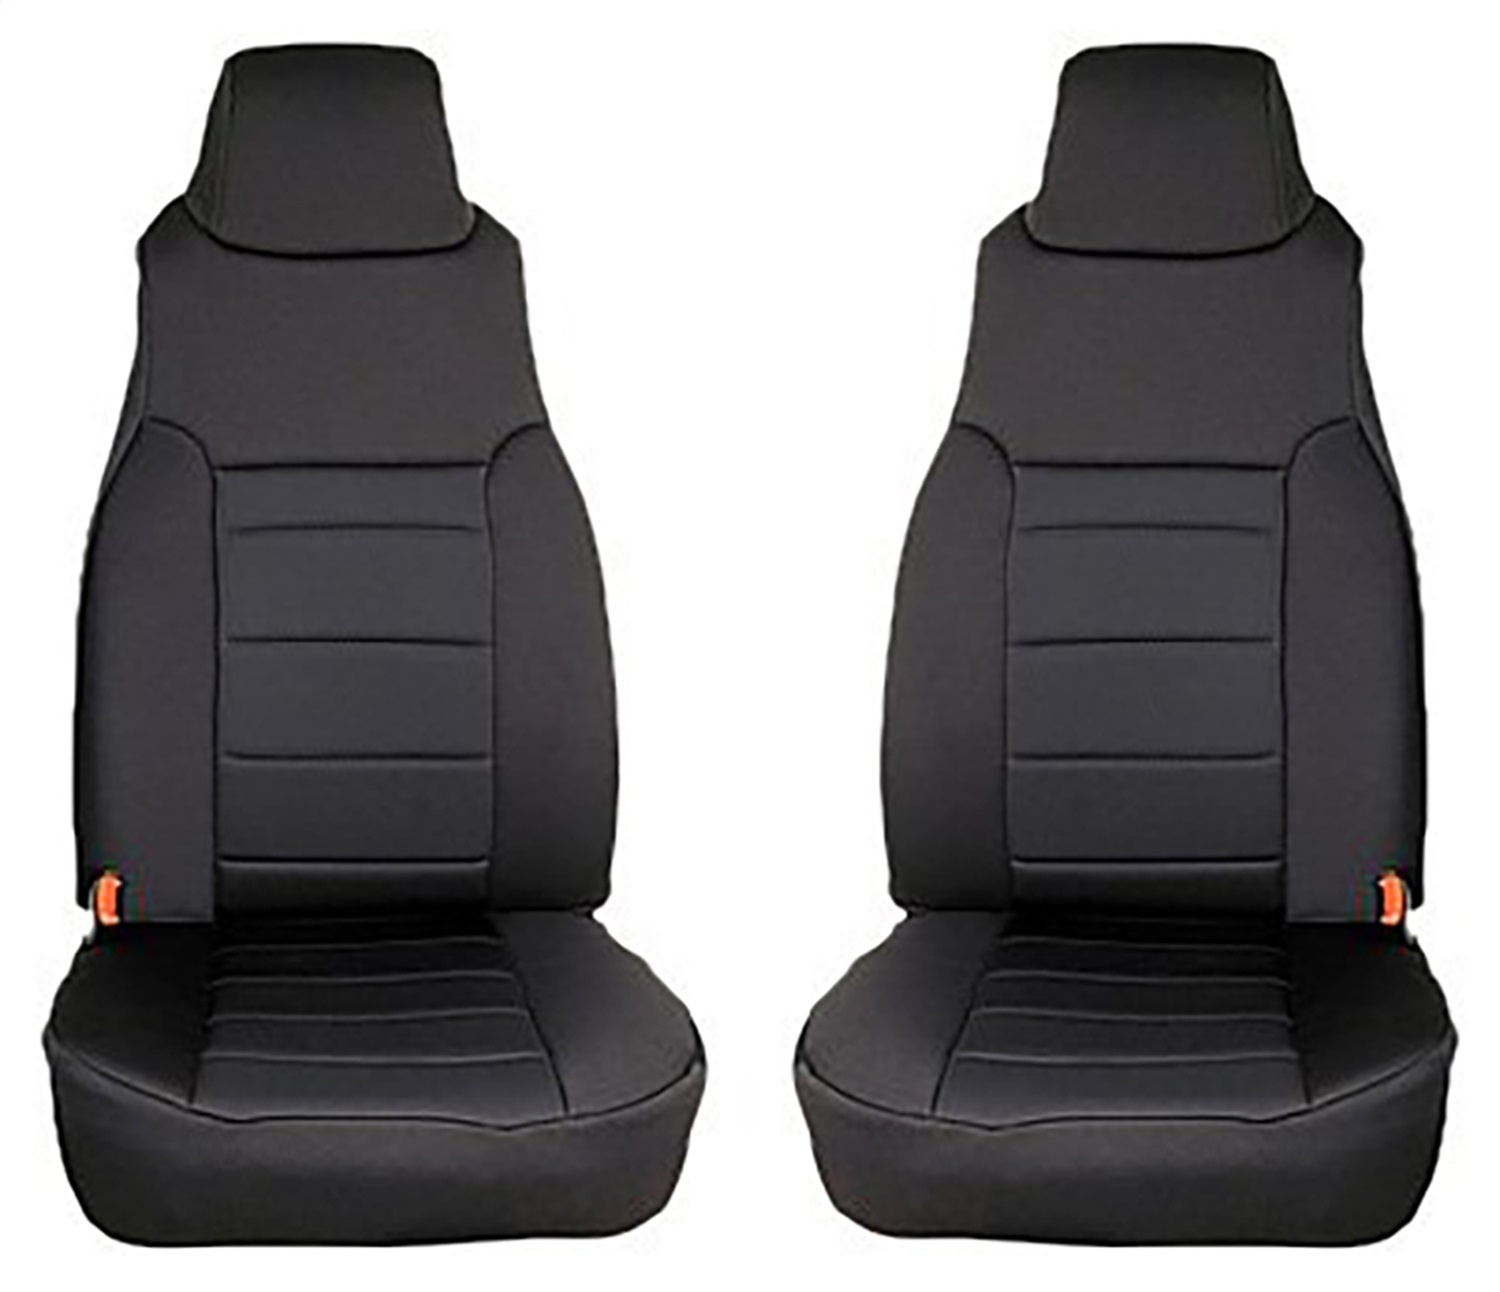 Rugged Ridge Rugged Ridge 13210.01 Custom Neoprene Seat Cover Fits 97-05 Wrangler (TJ)